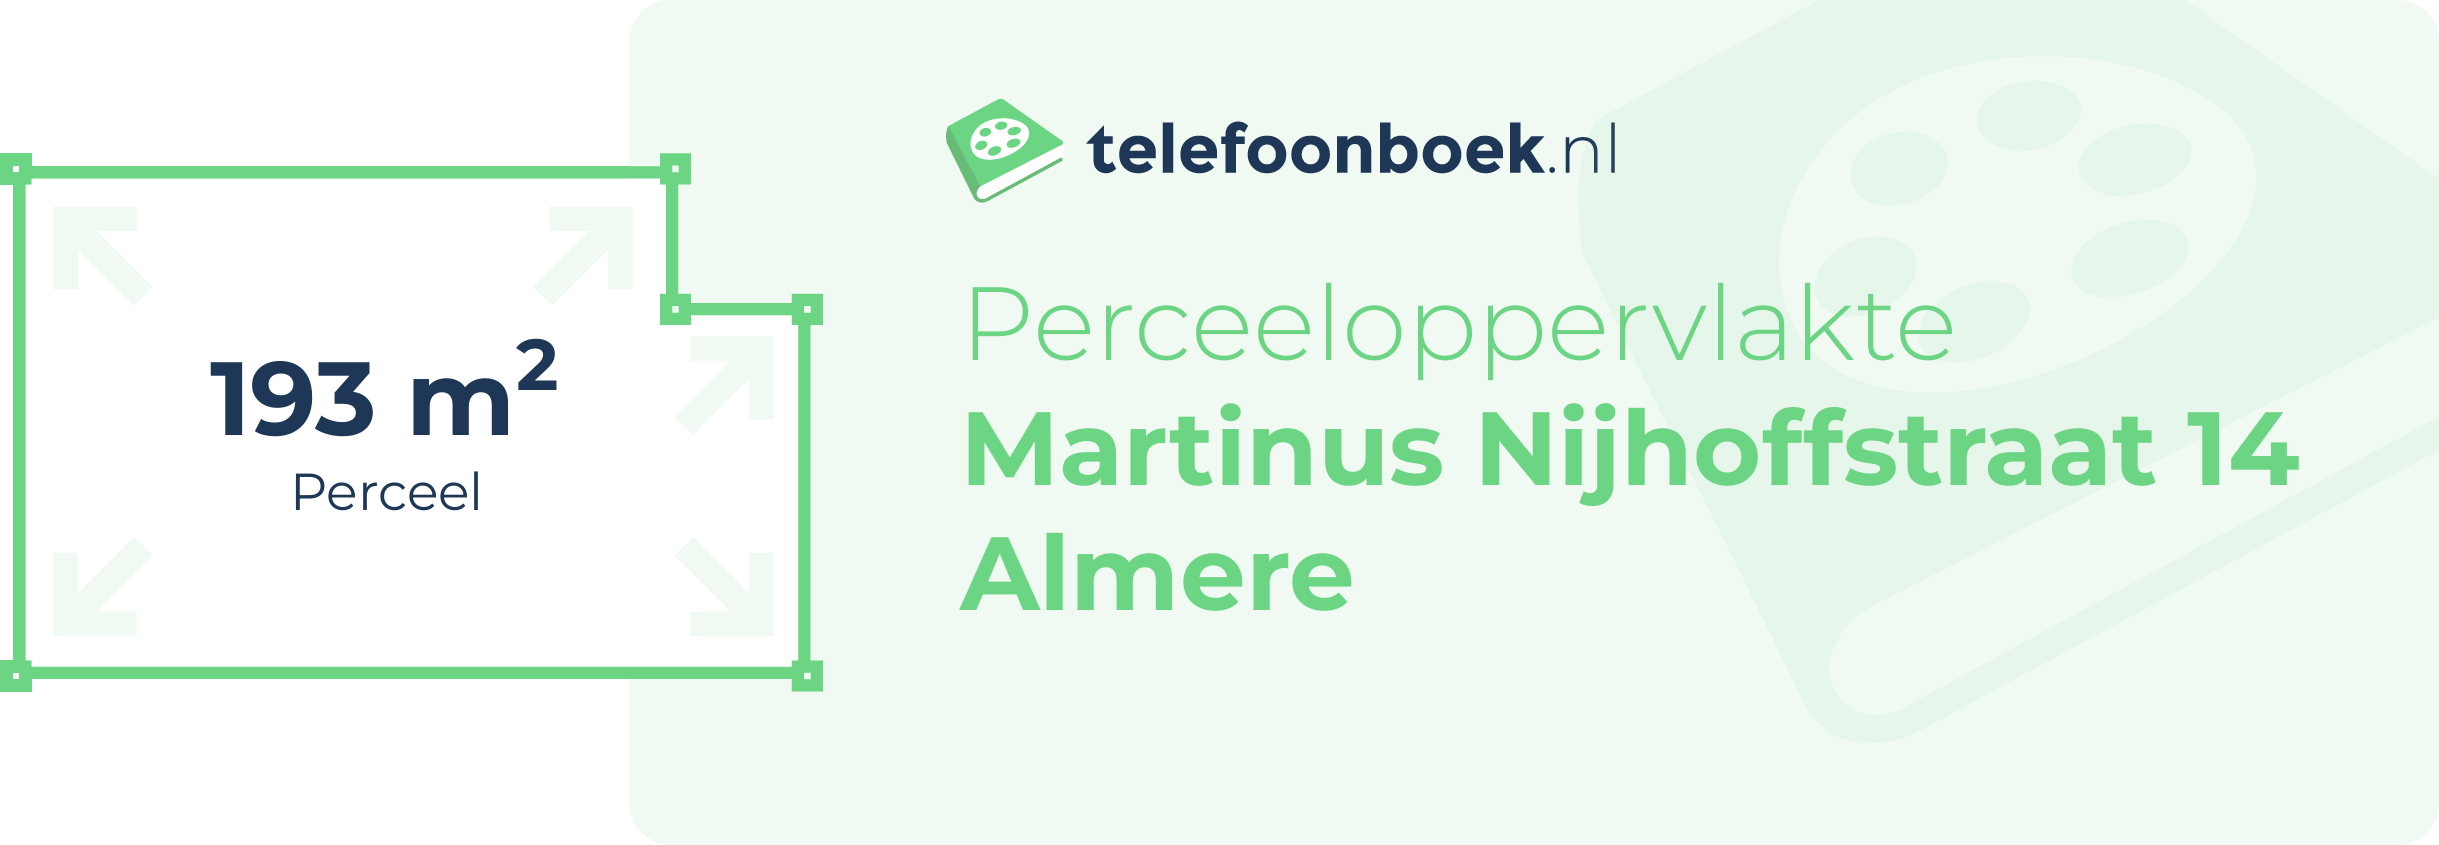 Perceeloppervlakte Martinus Nijhoffstraat 14 Almere